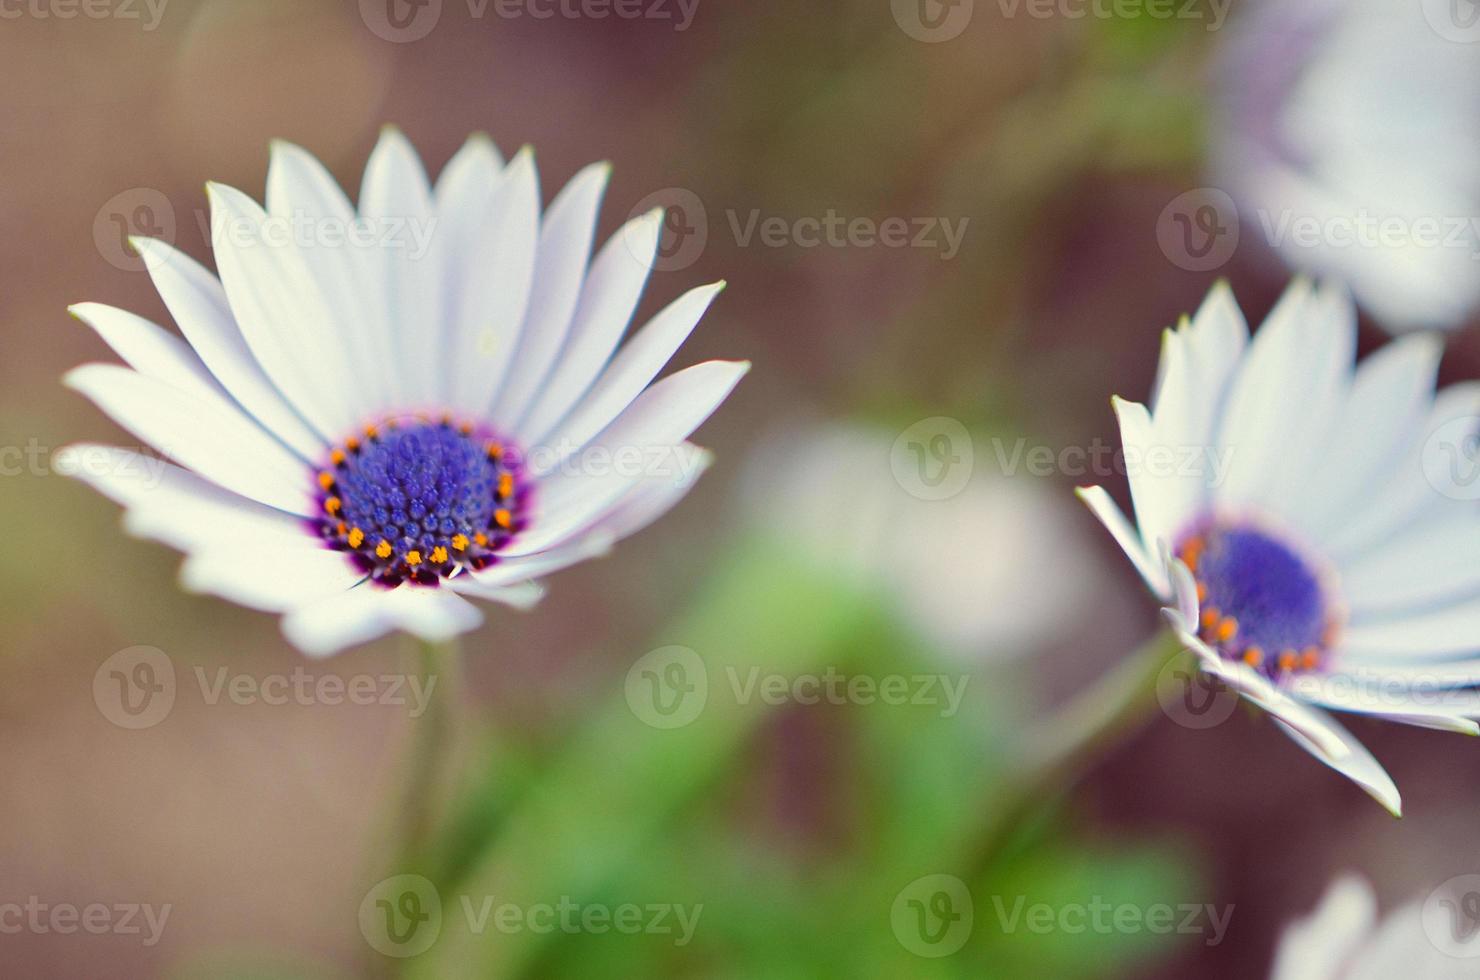 planta de jardim gazania em flor branca e azul foto